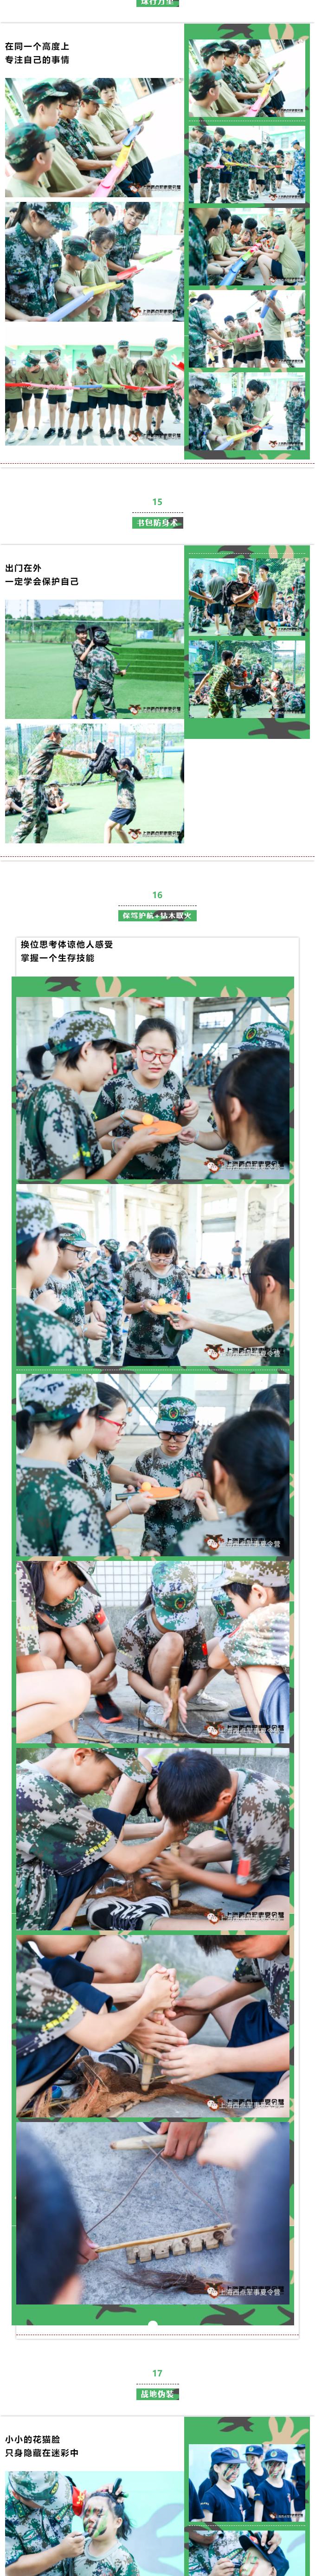 上海西点军事夏令营精彩图片回顾及活动照片